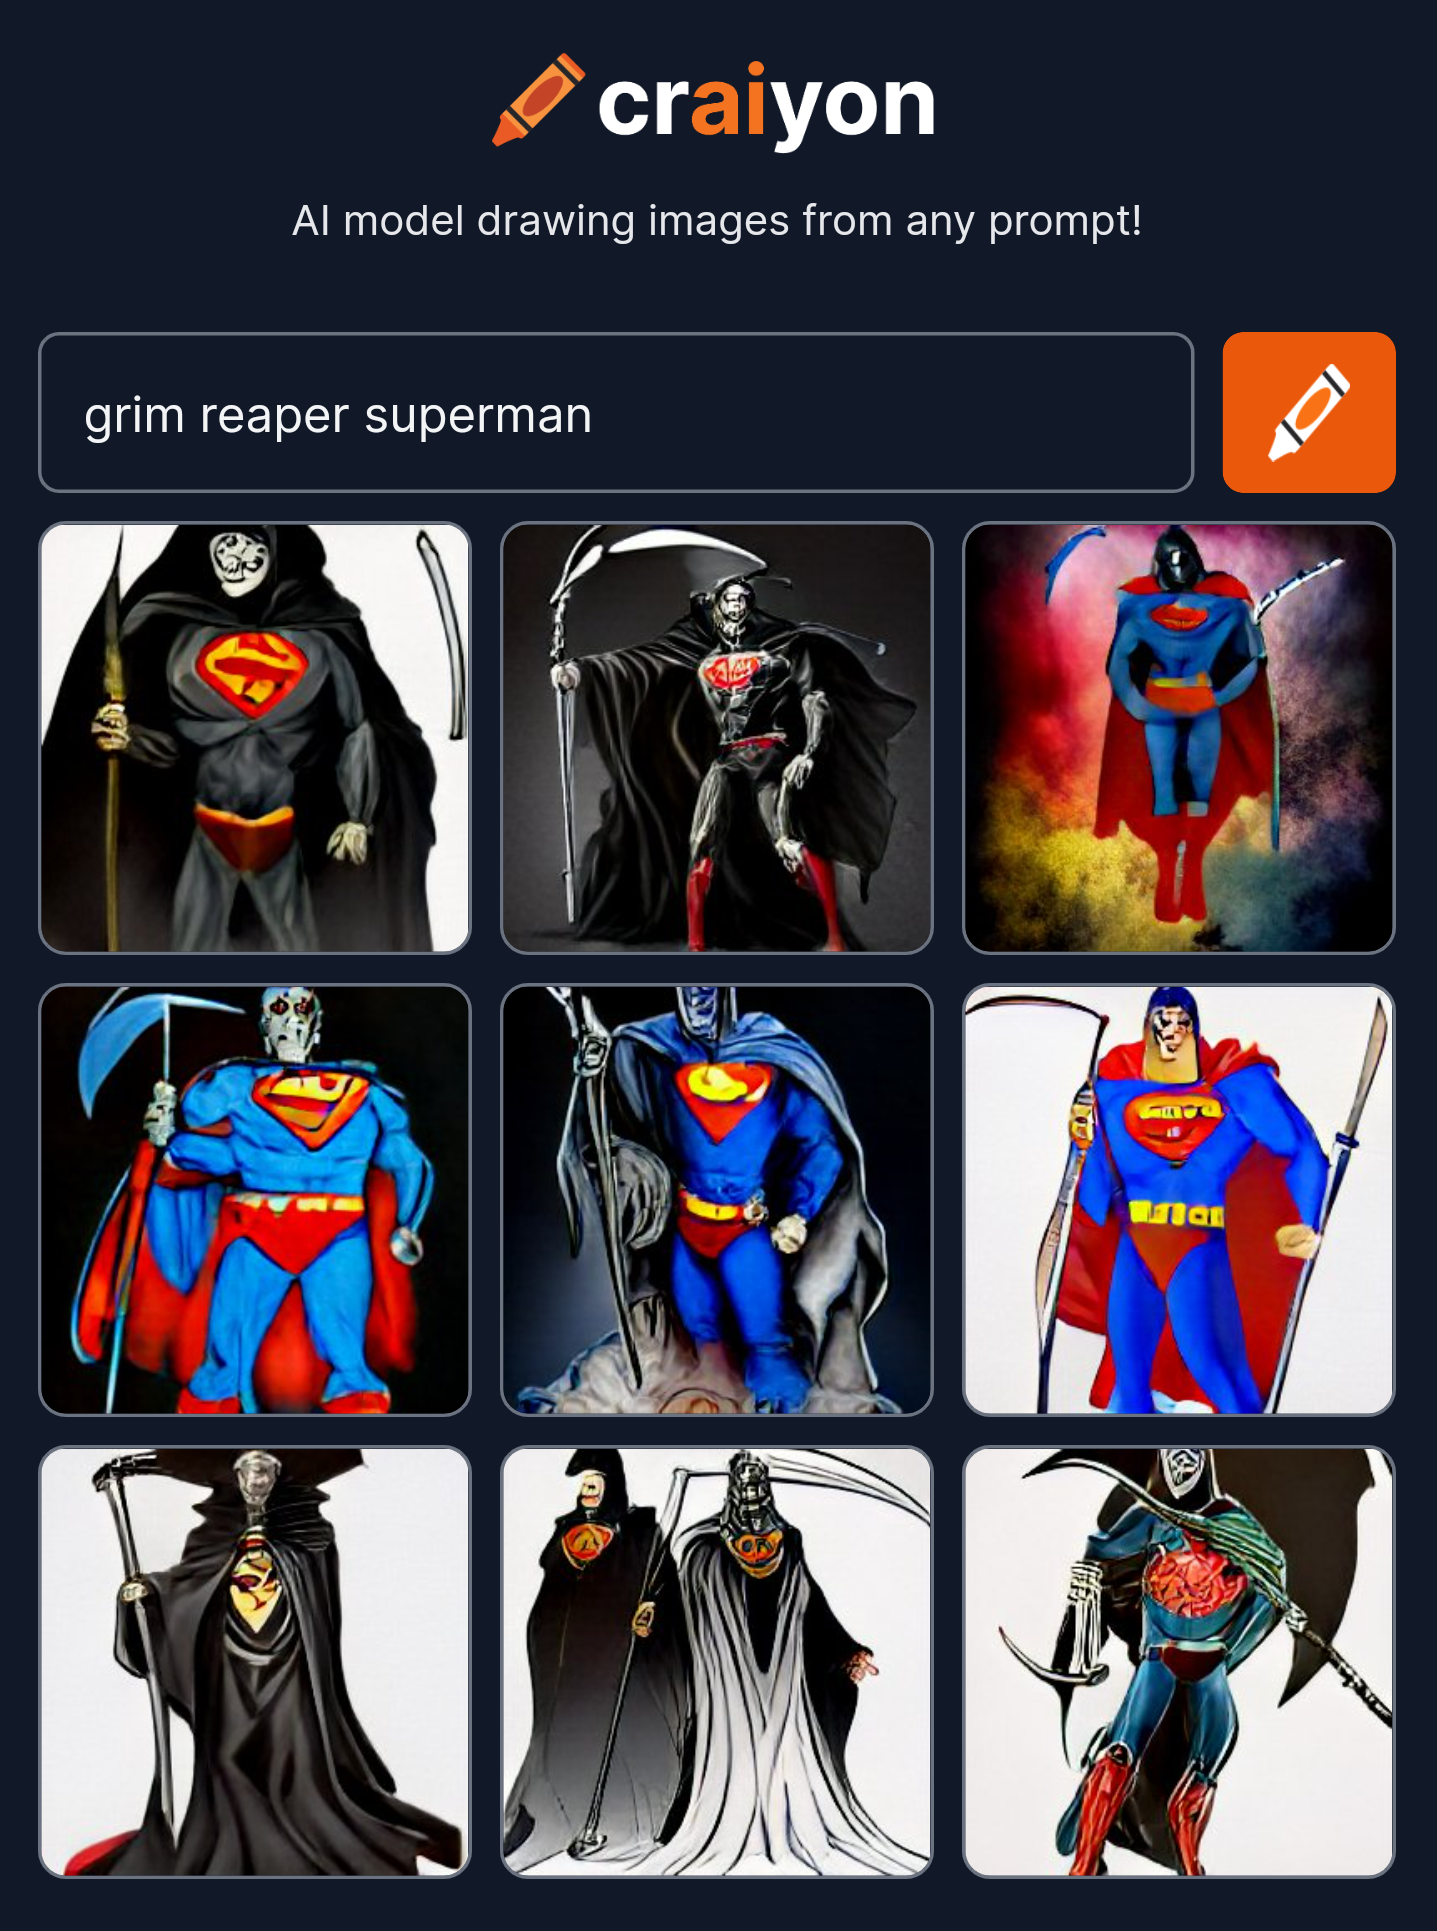 craiyon_194204_grim_reaper_superman.png